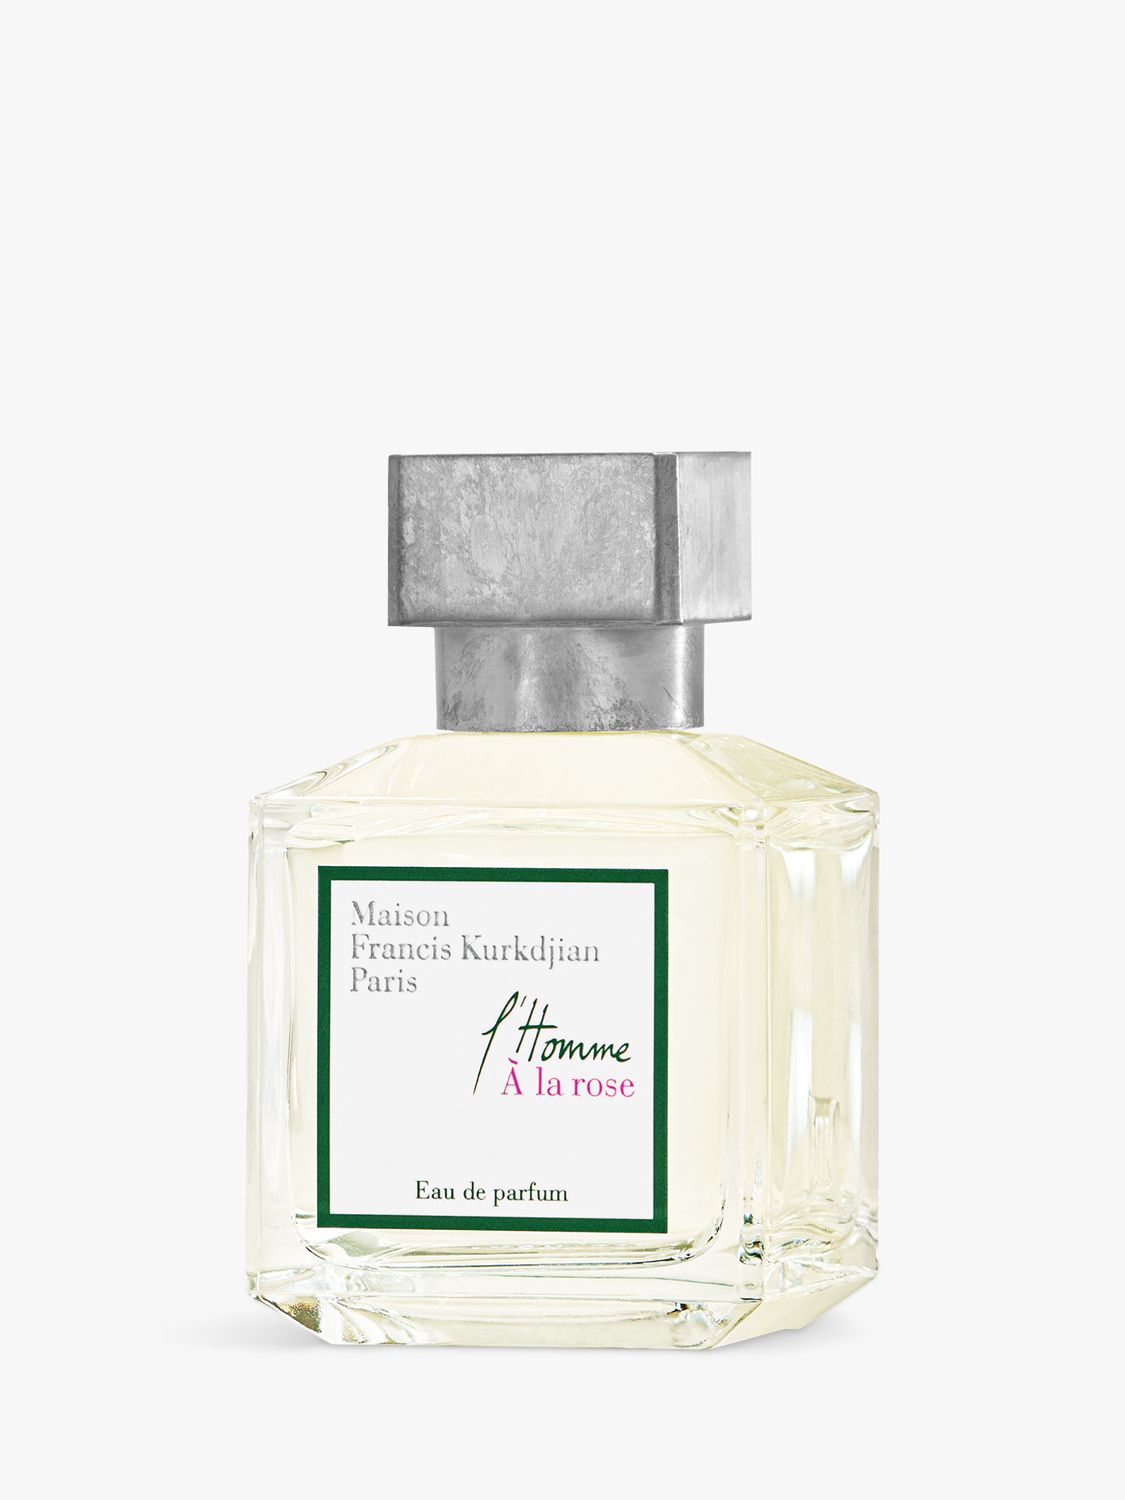 Maison Francis Kurkdjian L'Homme A la Rose Eau de Parfum, 70ml 2